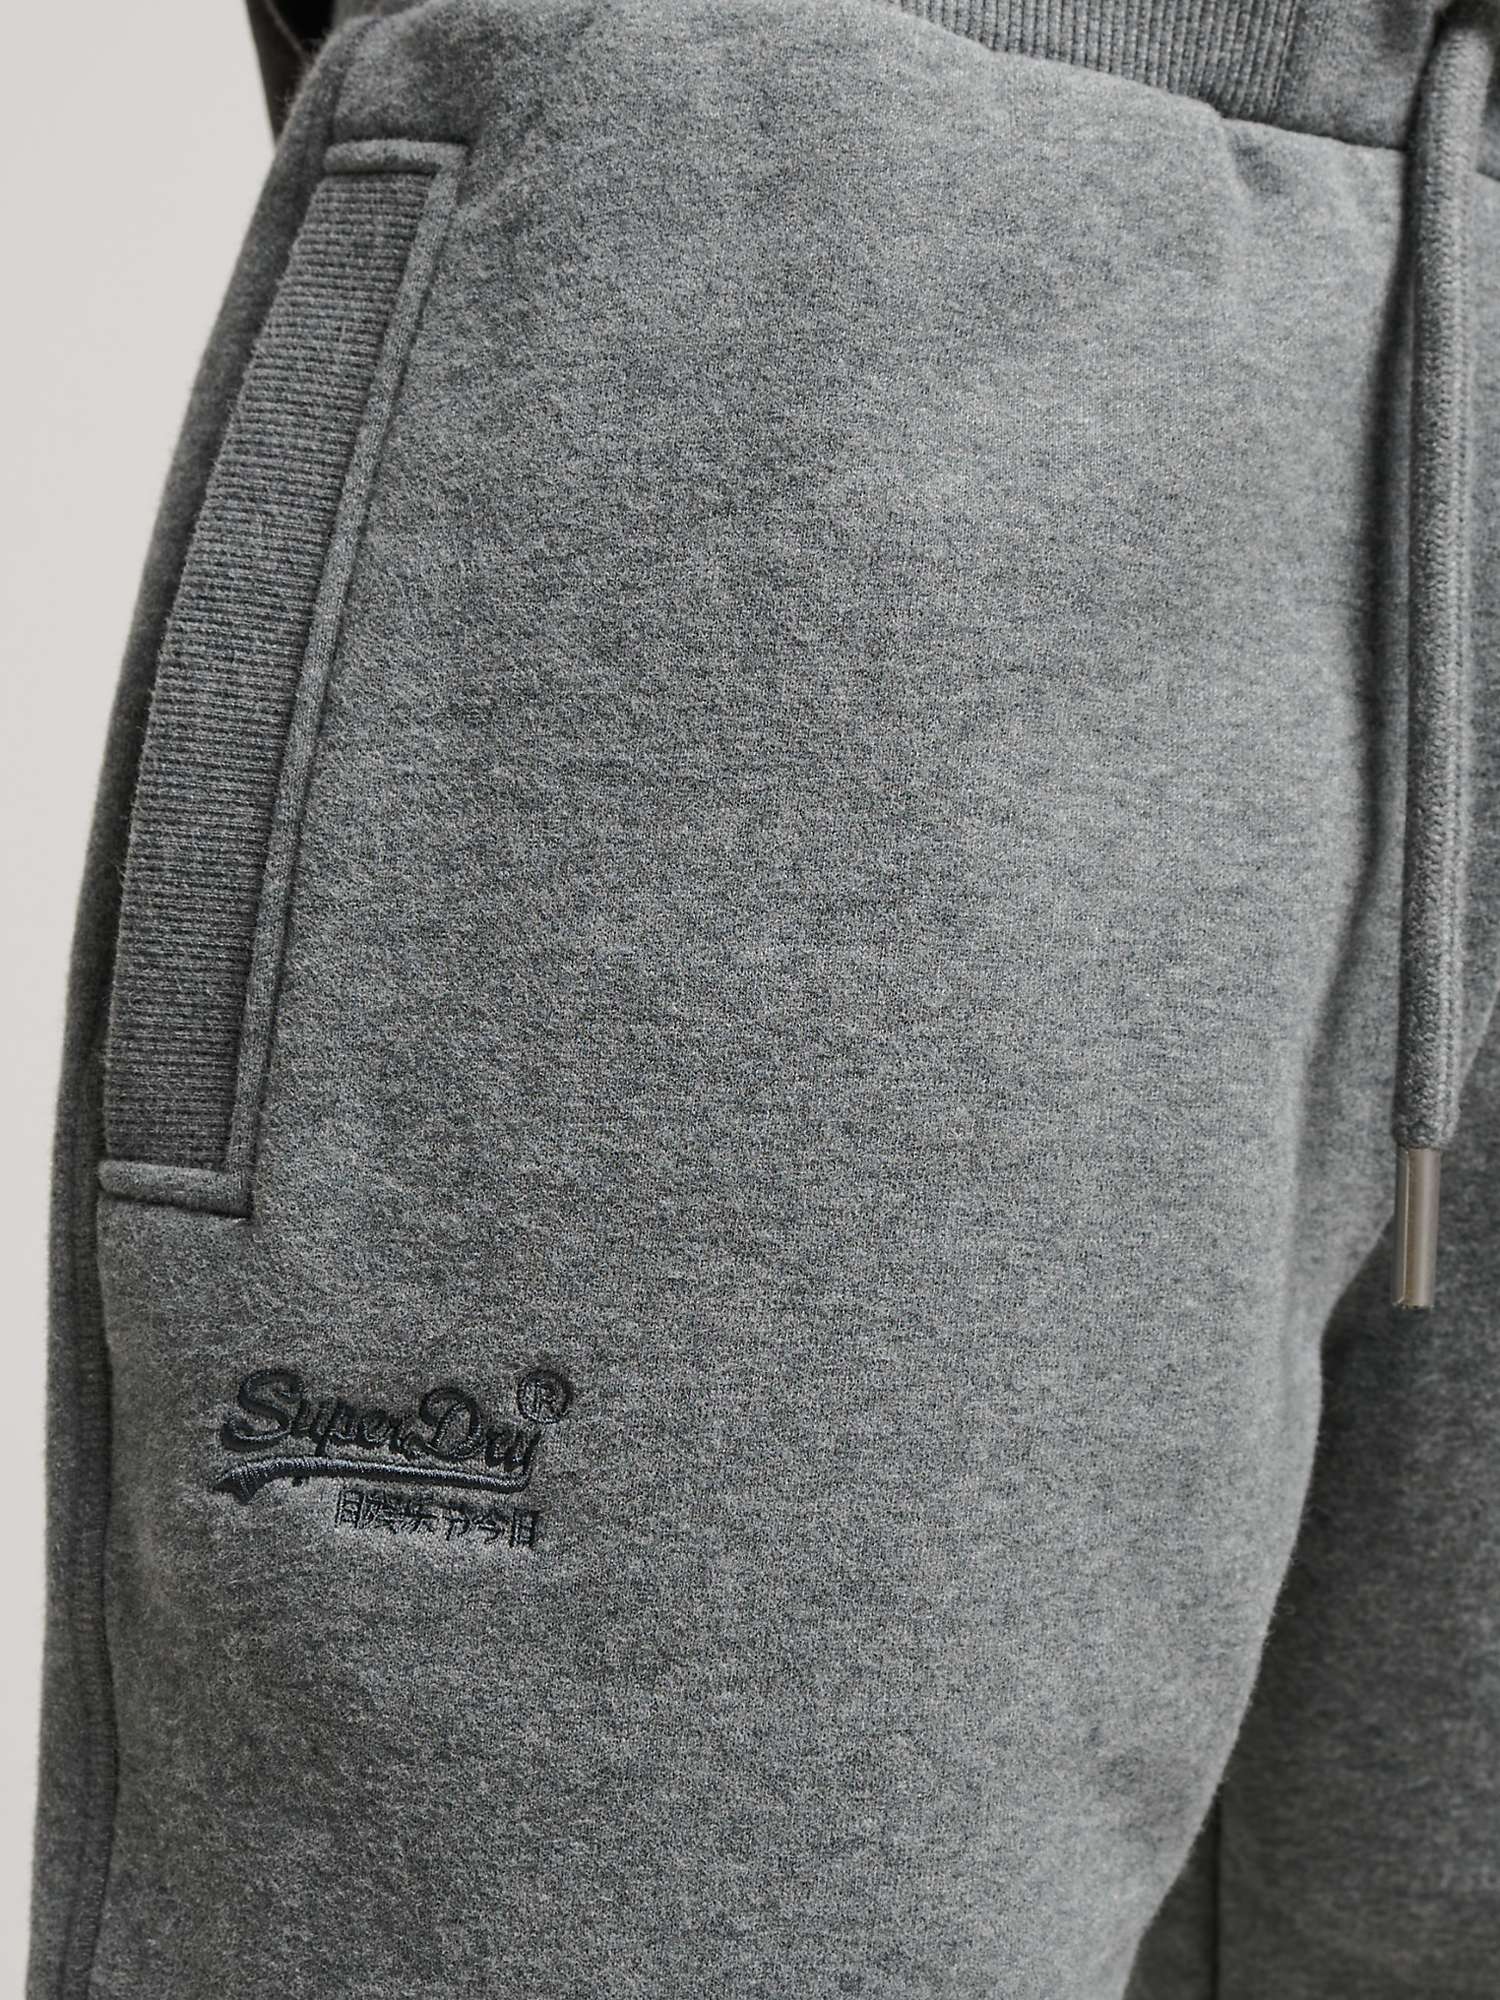 Buy Superdry Vintage Logo Embroidered Jersey Shorts Online at johnlewis.com